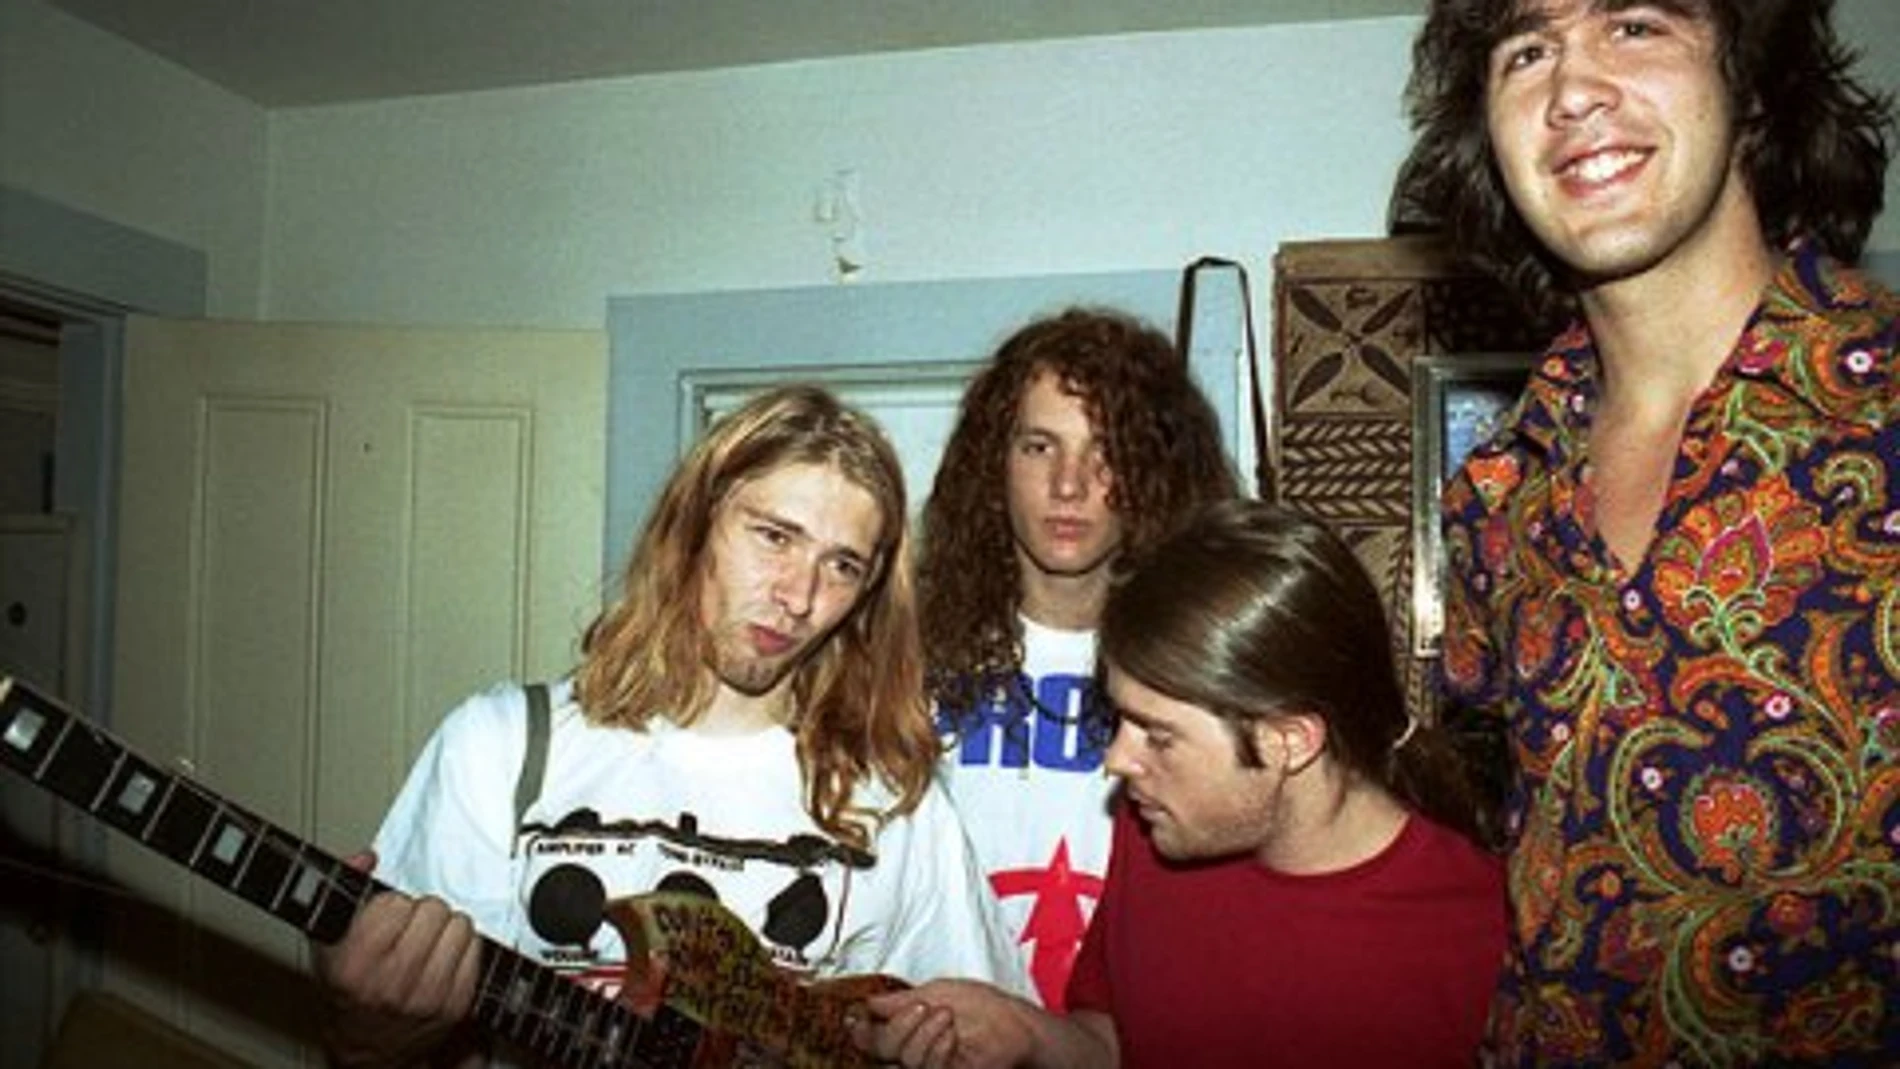 Kurt Cobain murió el 5 de abril de 1994 a los 27 años